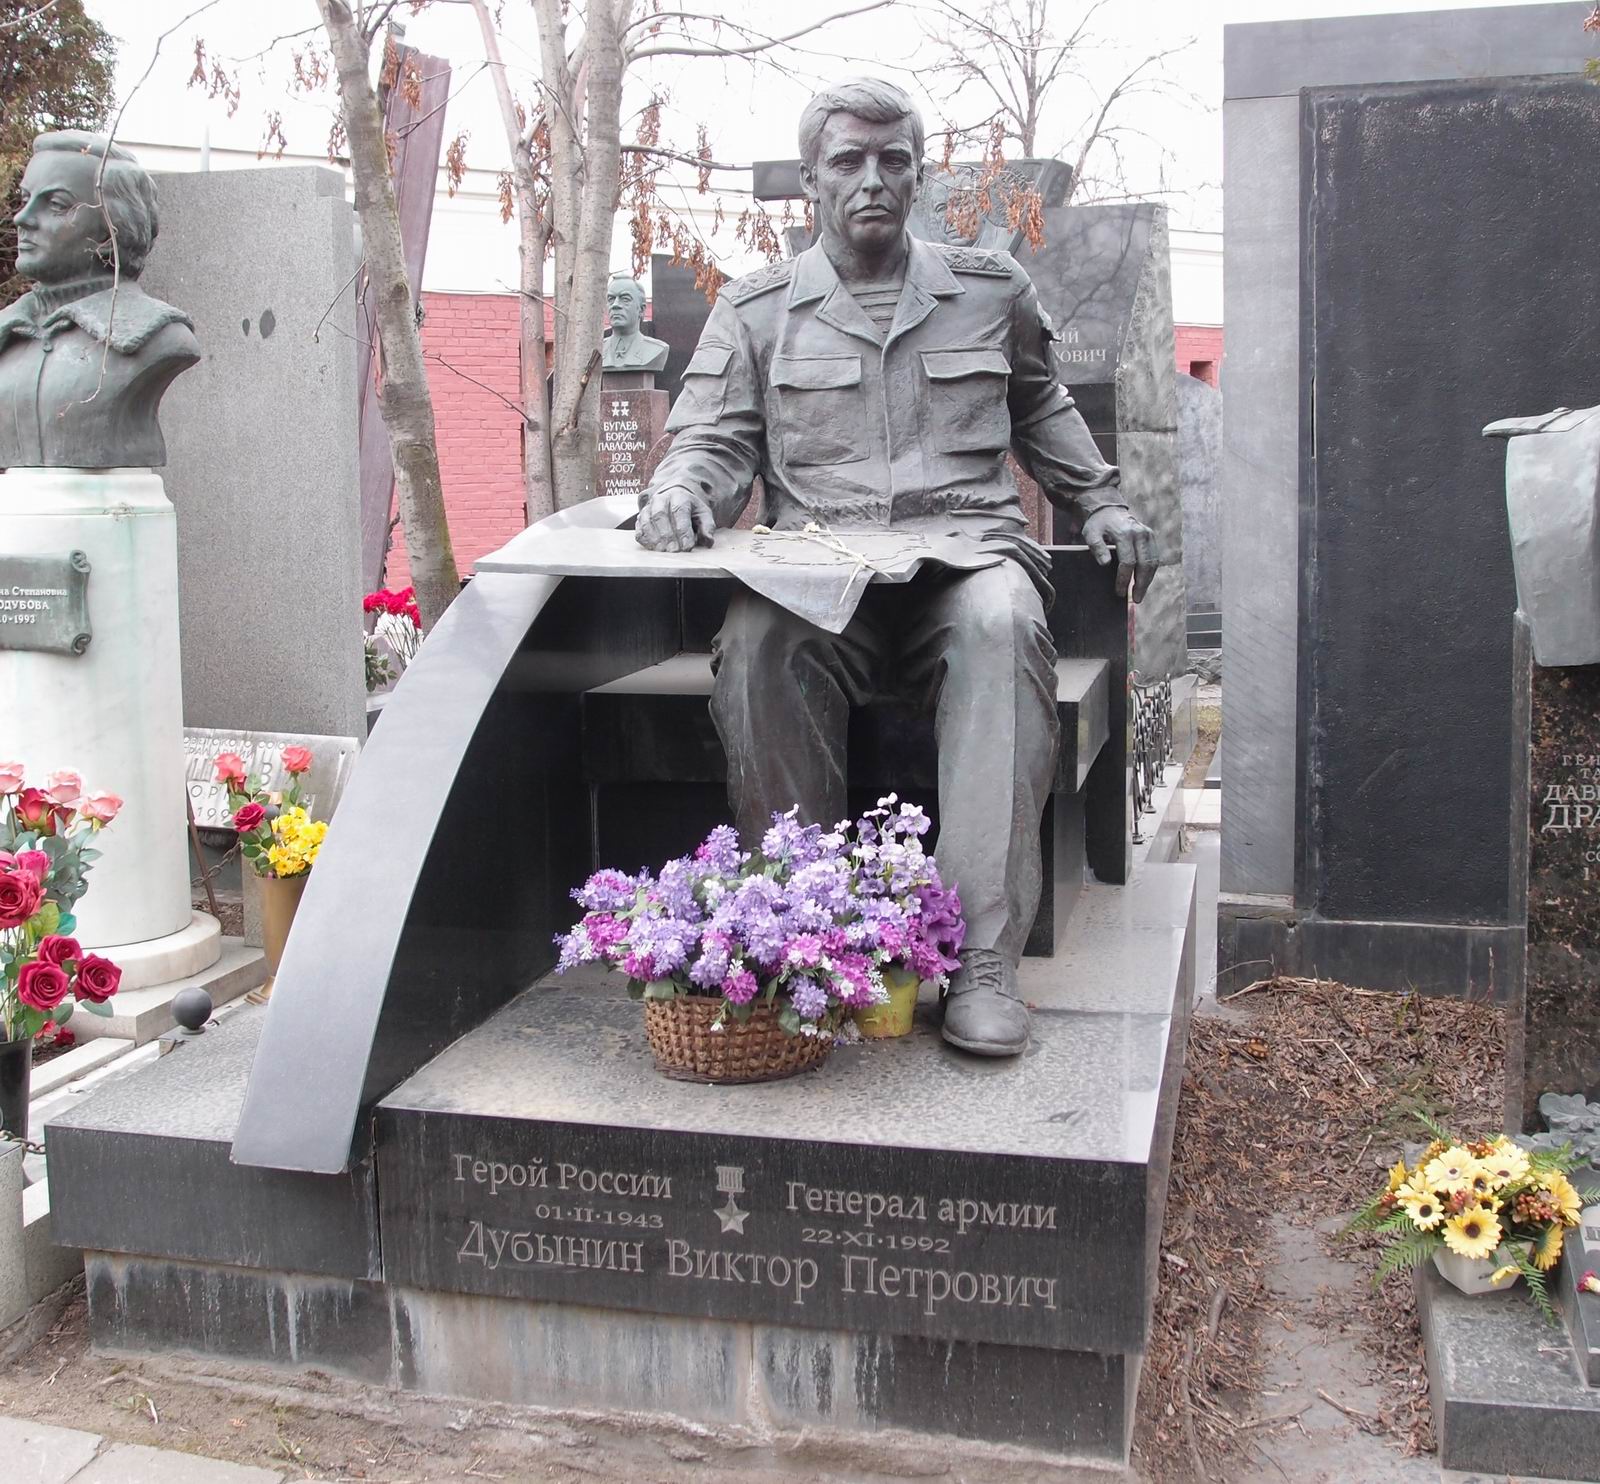 Памятник на могиле Дубынина В.П. (1943-1992), ск. А.Бельдюшкин, арх. Б.Шехура, на Новодевичьем кладбище (11-3-8).